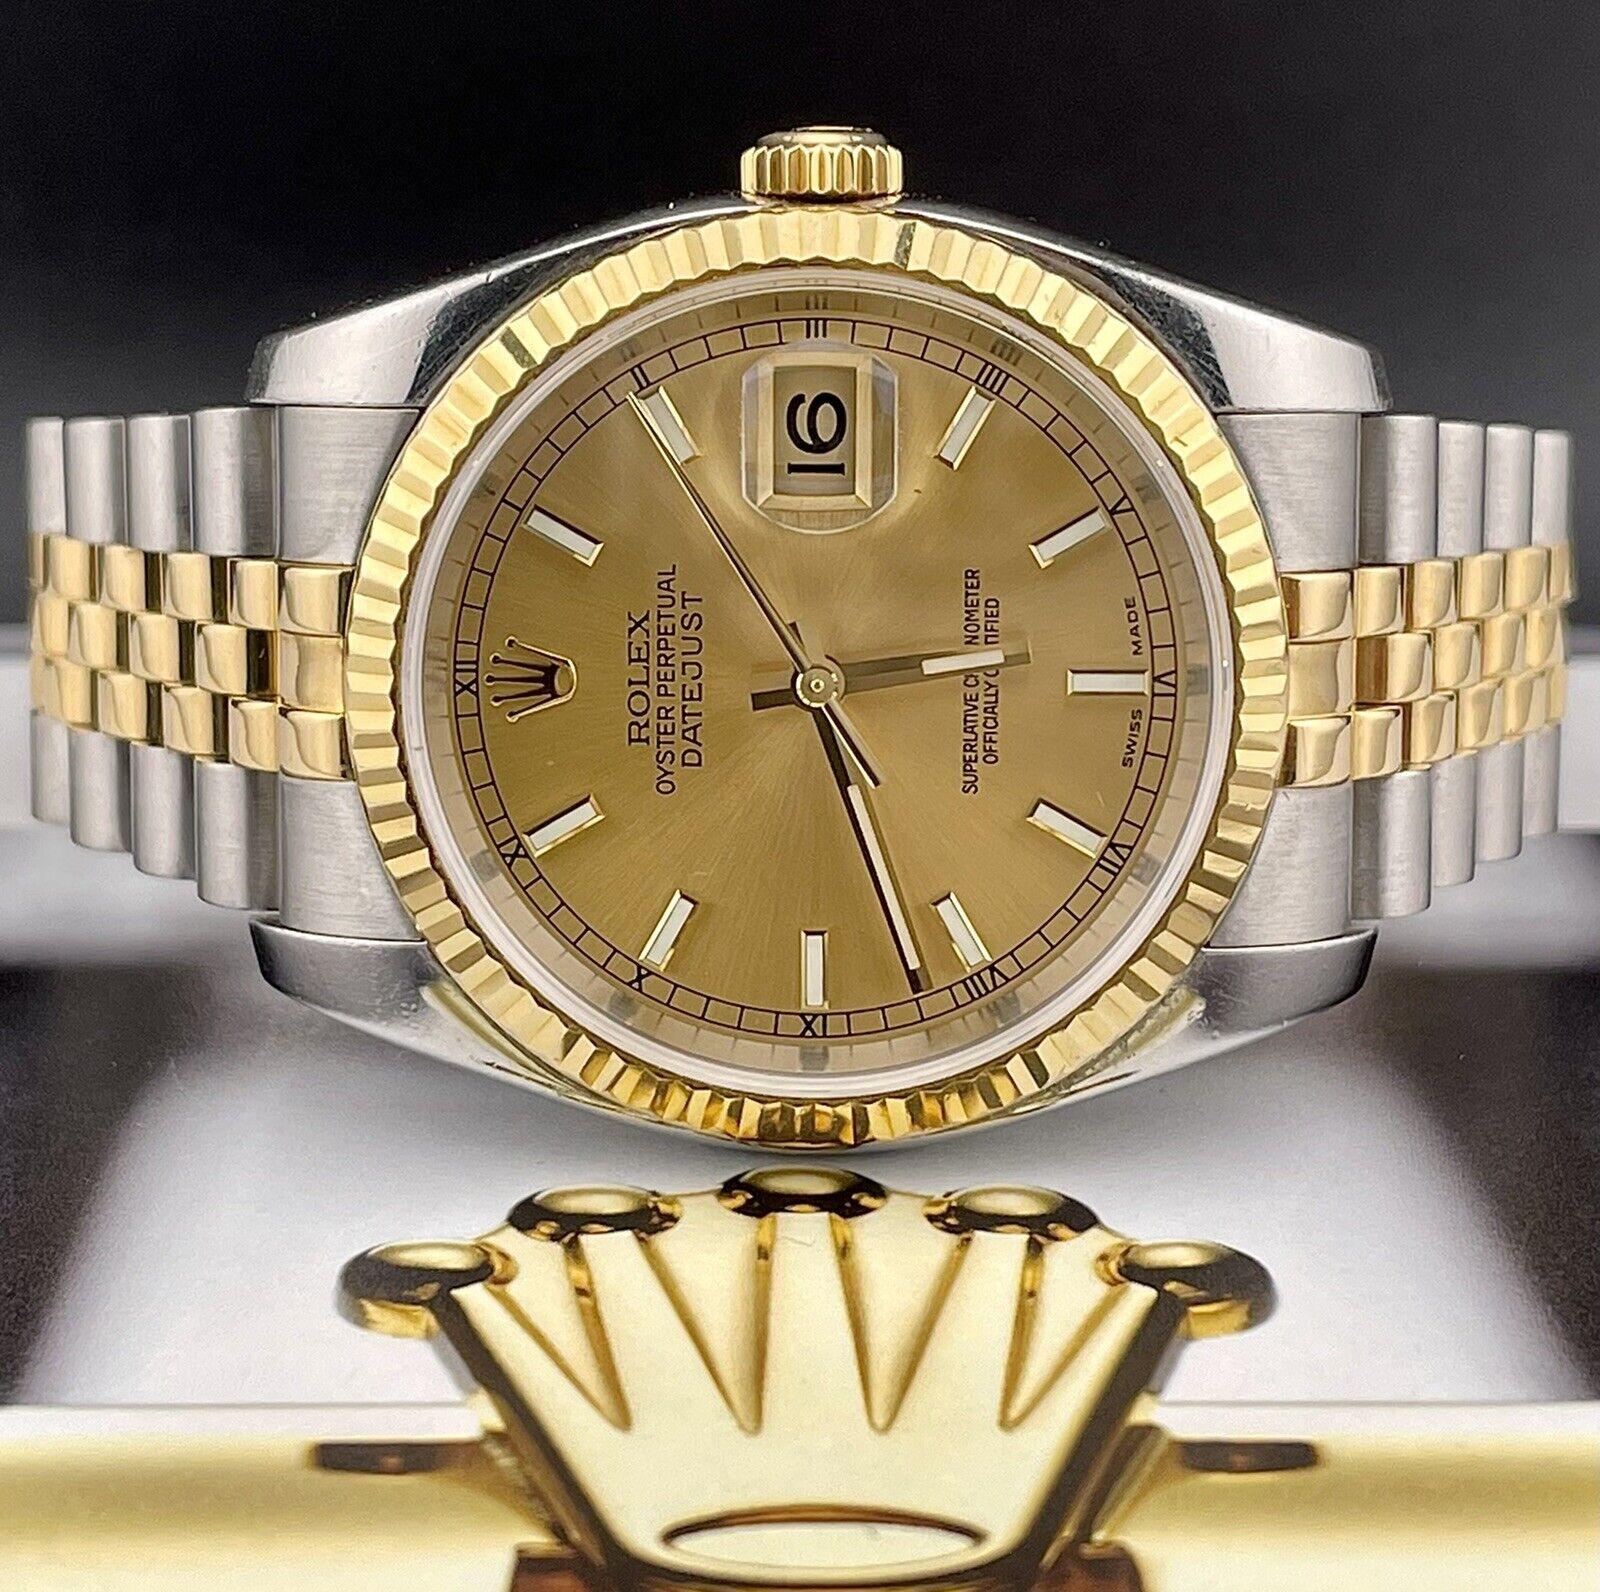 Montre Rolex Datejust 36mm. Une montre d'occasion avec boîte cadeau. La montre est 100% authentique et est livrée avec
Carte d'authenticité. La référence de la montre est 116233 et elle est en excellent état (voir photos). La couleur du cadran